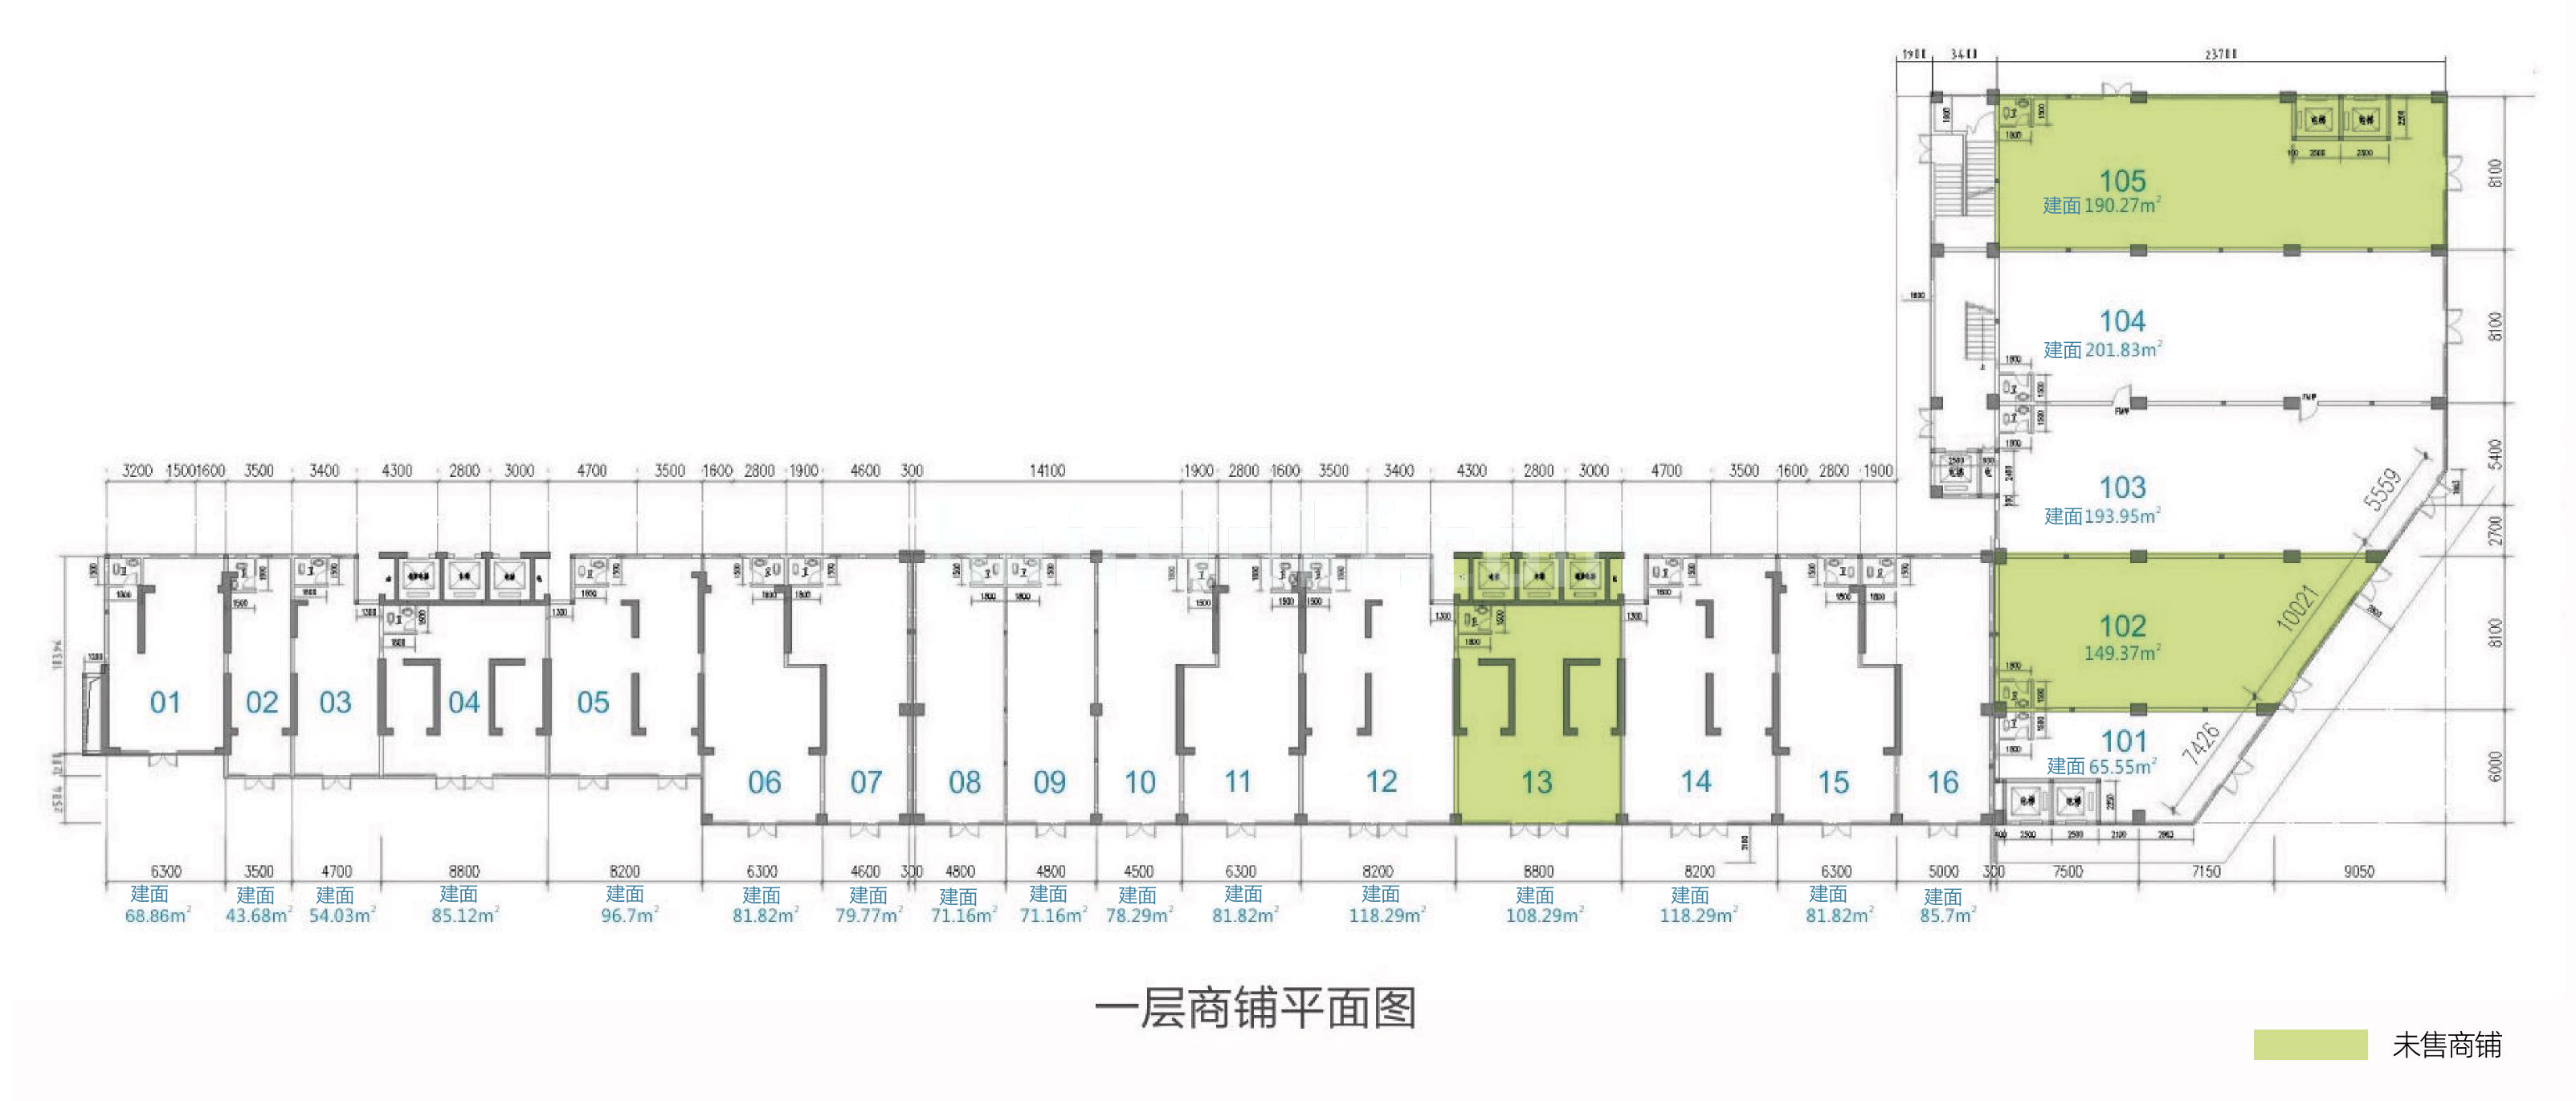 龙昆悦城 独立商业 一层平面图 1-16为底商